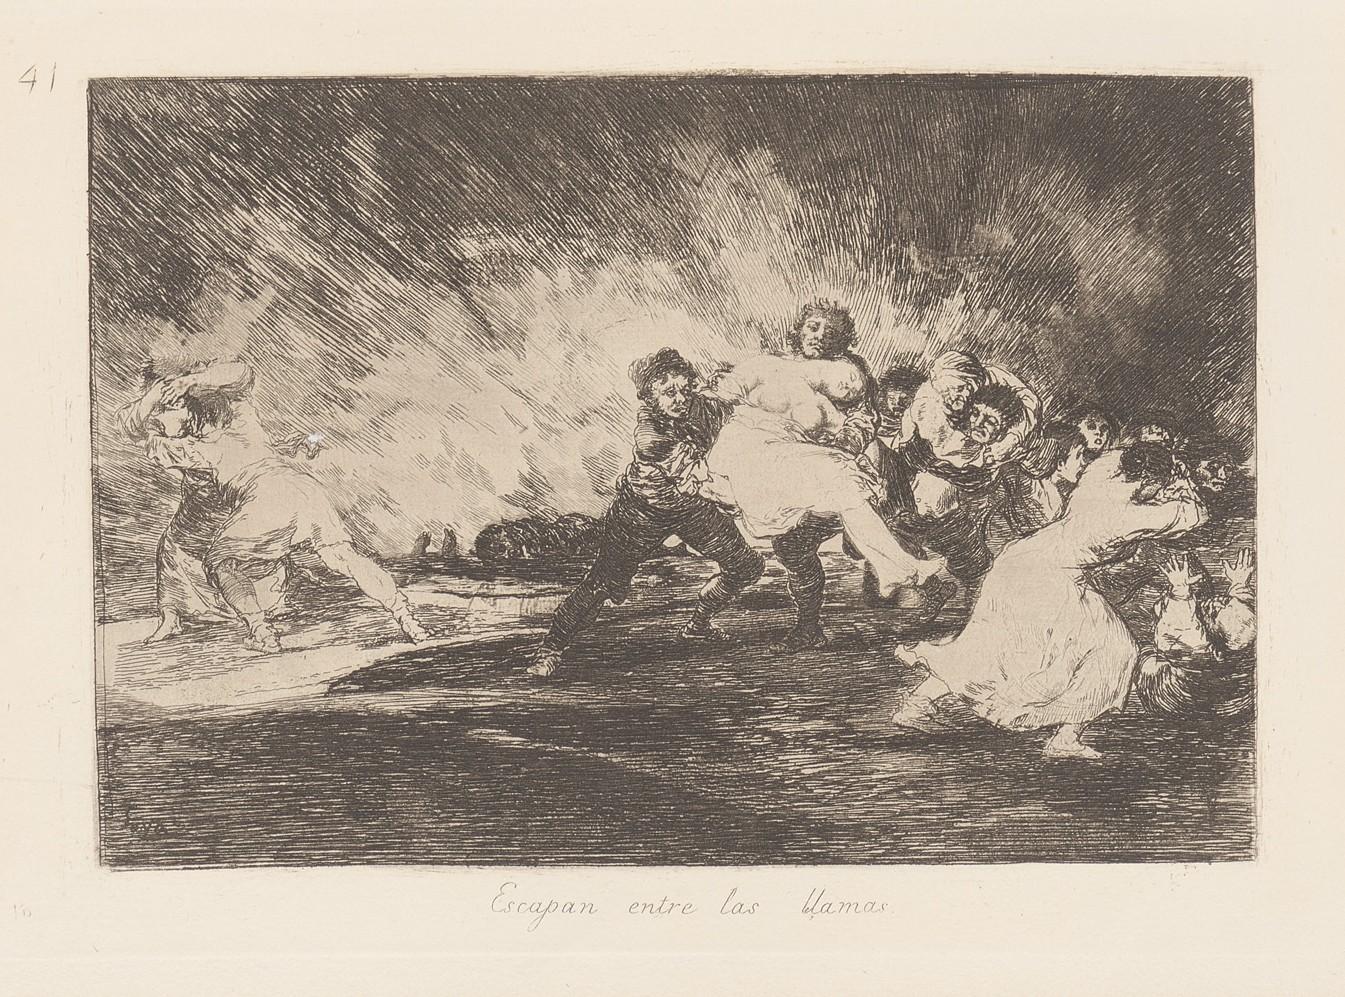 They escape through the flames. (Ecsapan entre las llamas) - Goya y Lucientes Francisco